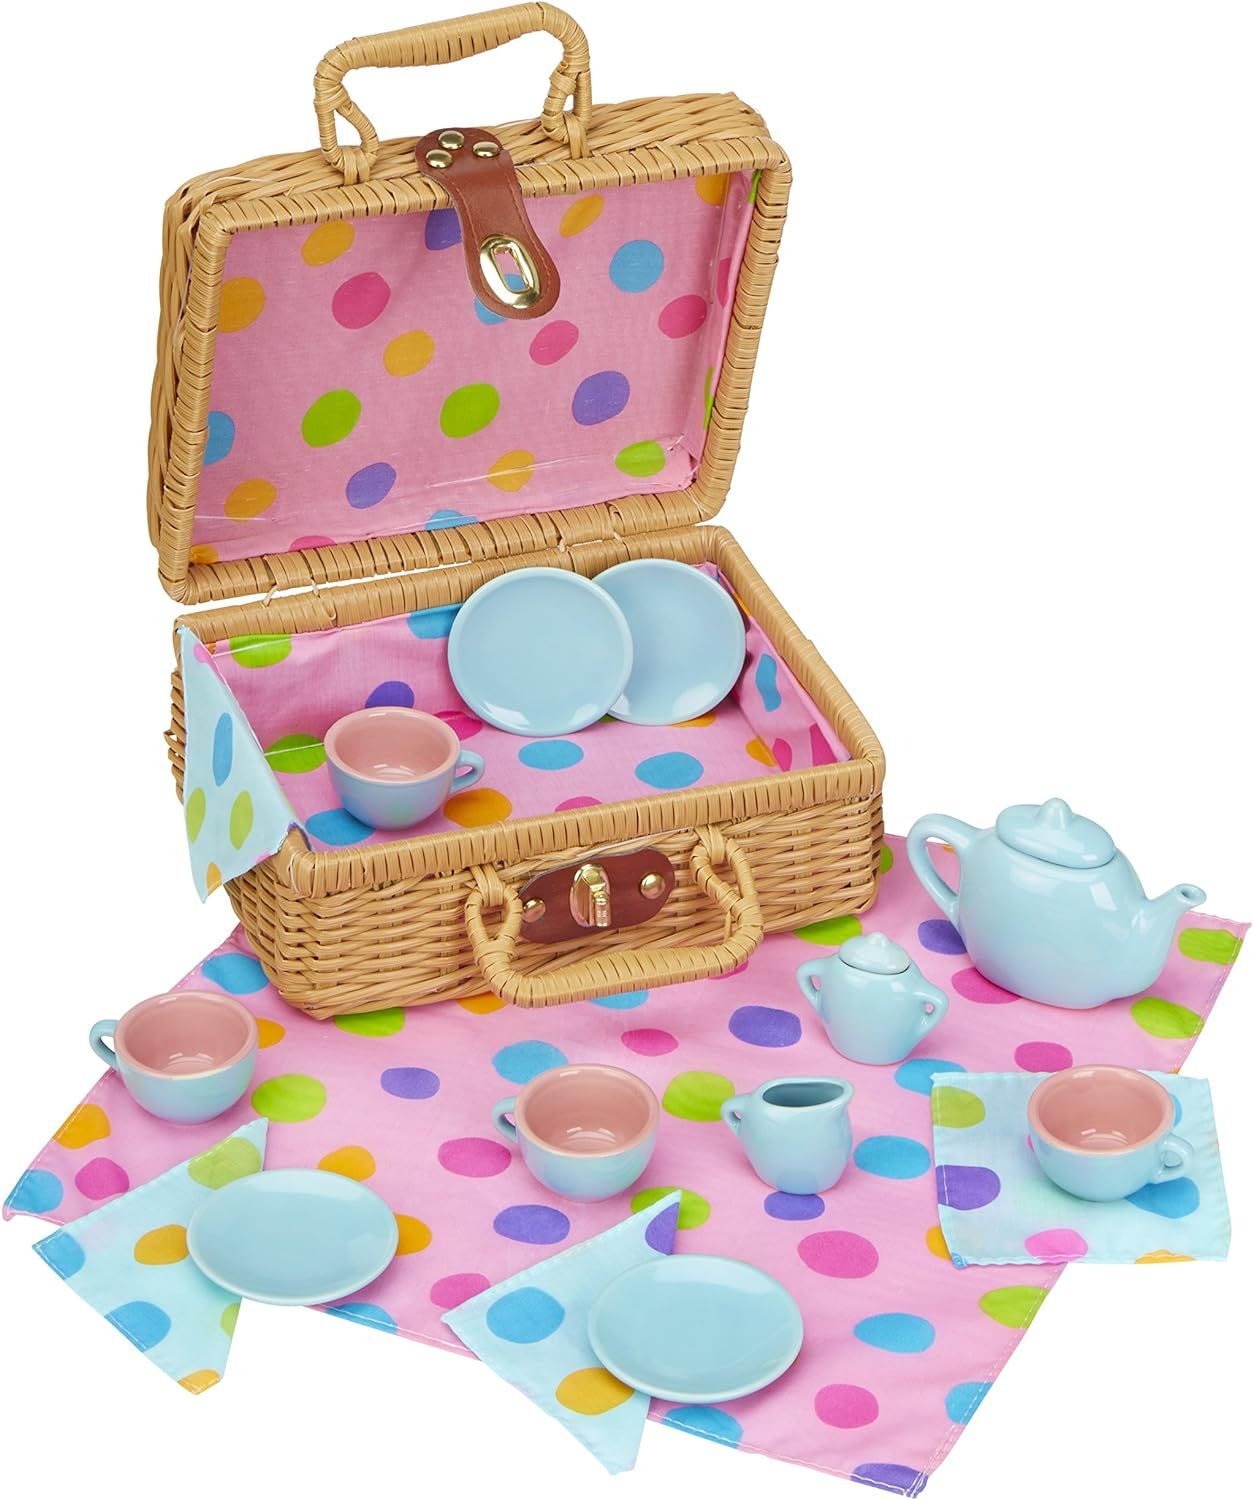 ALEX Toys Pretend & Play, Tea Set Basket, 709W | Amazon (US)